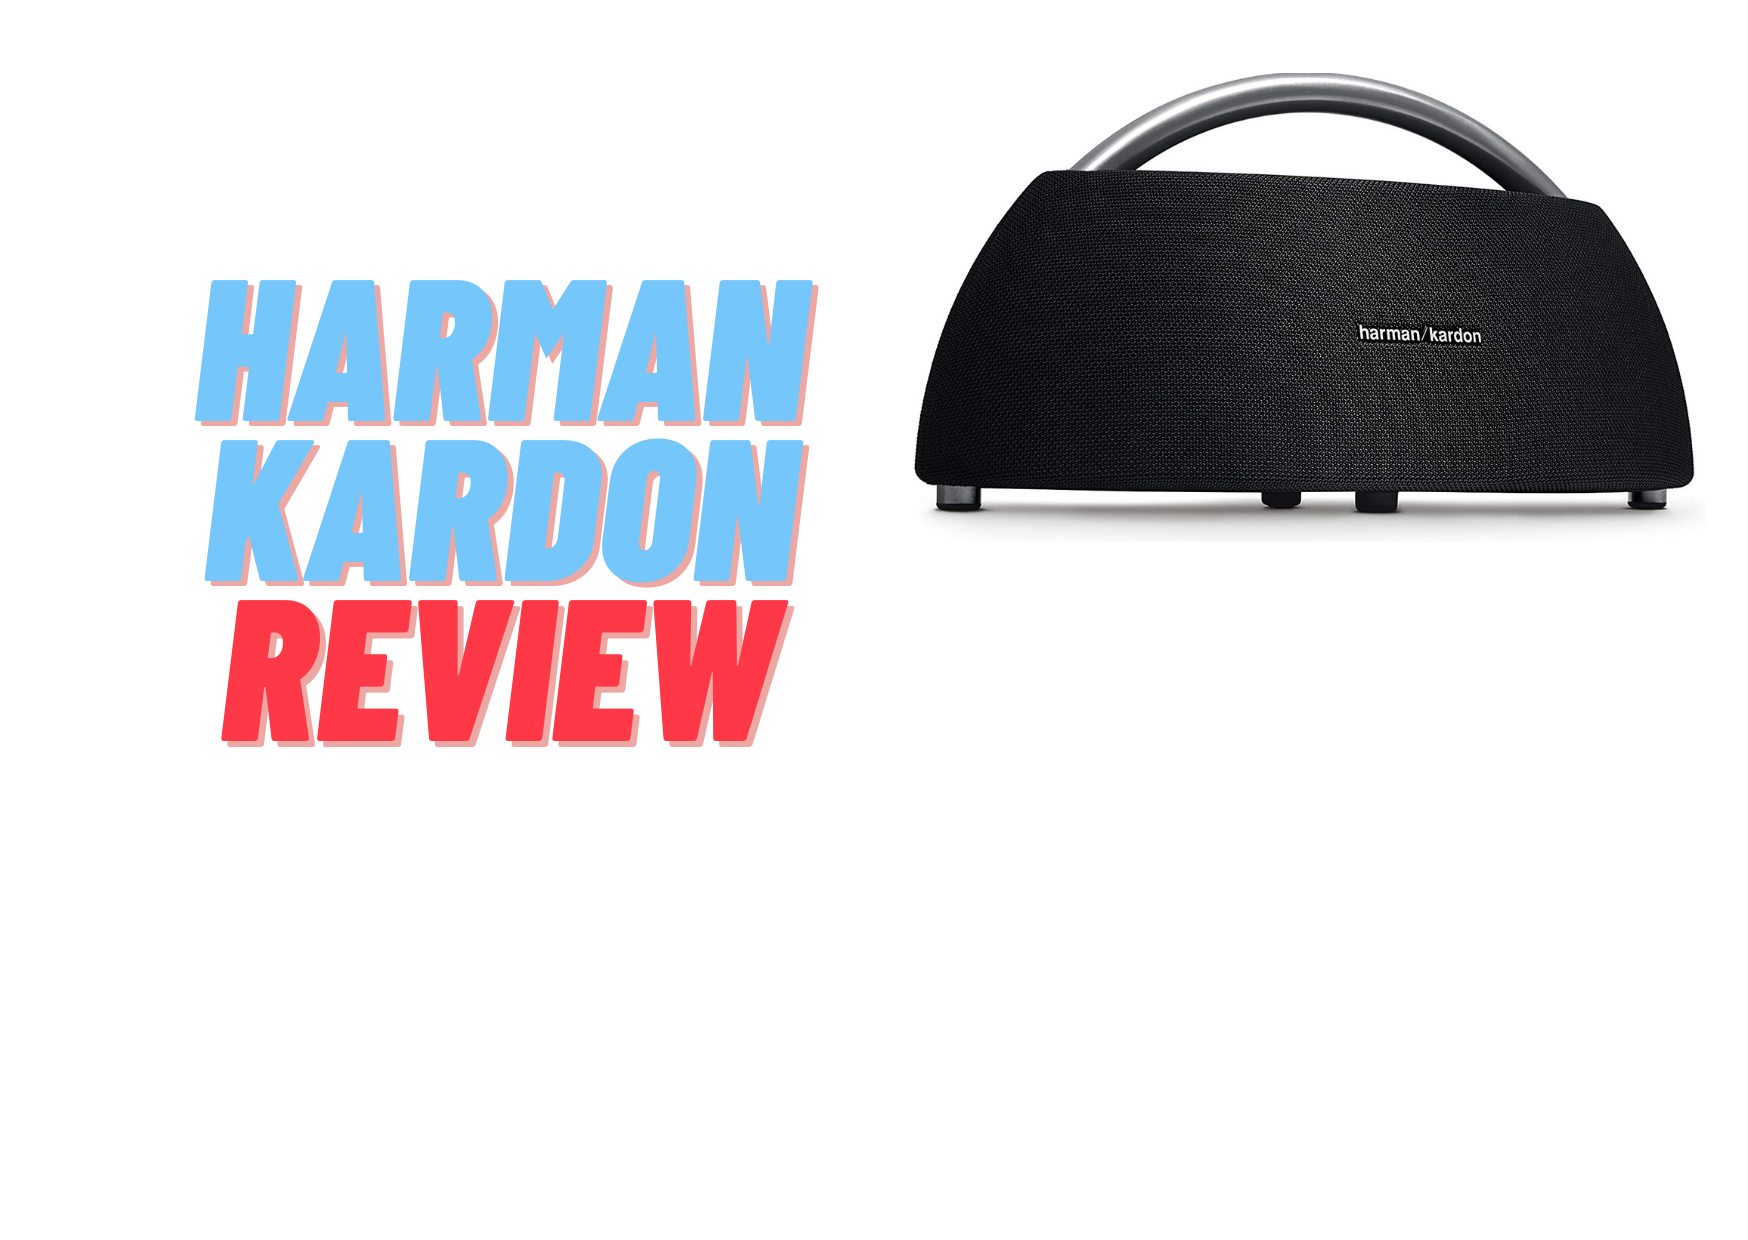 Harman kardon Bluetooth speaker